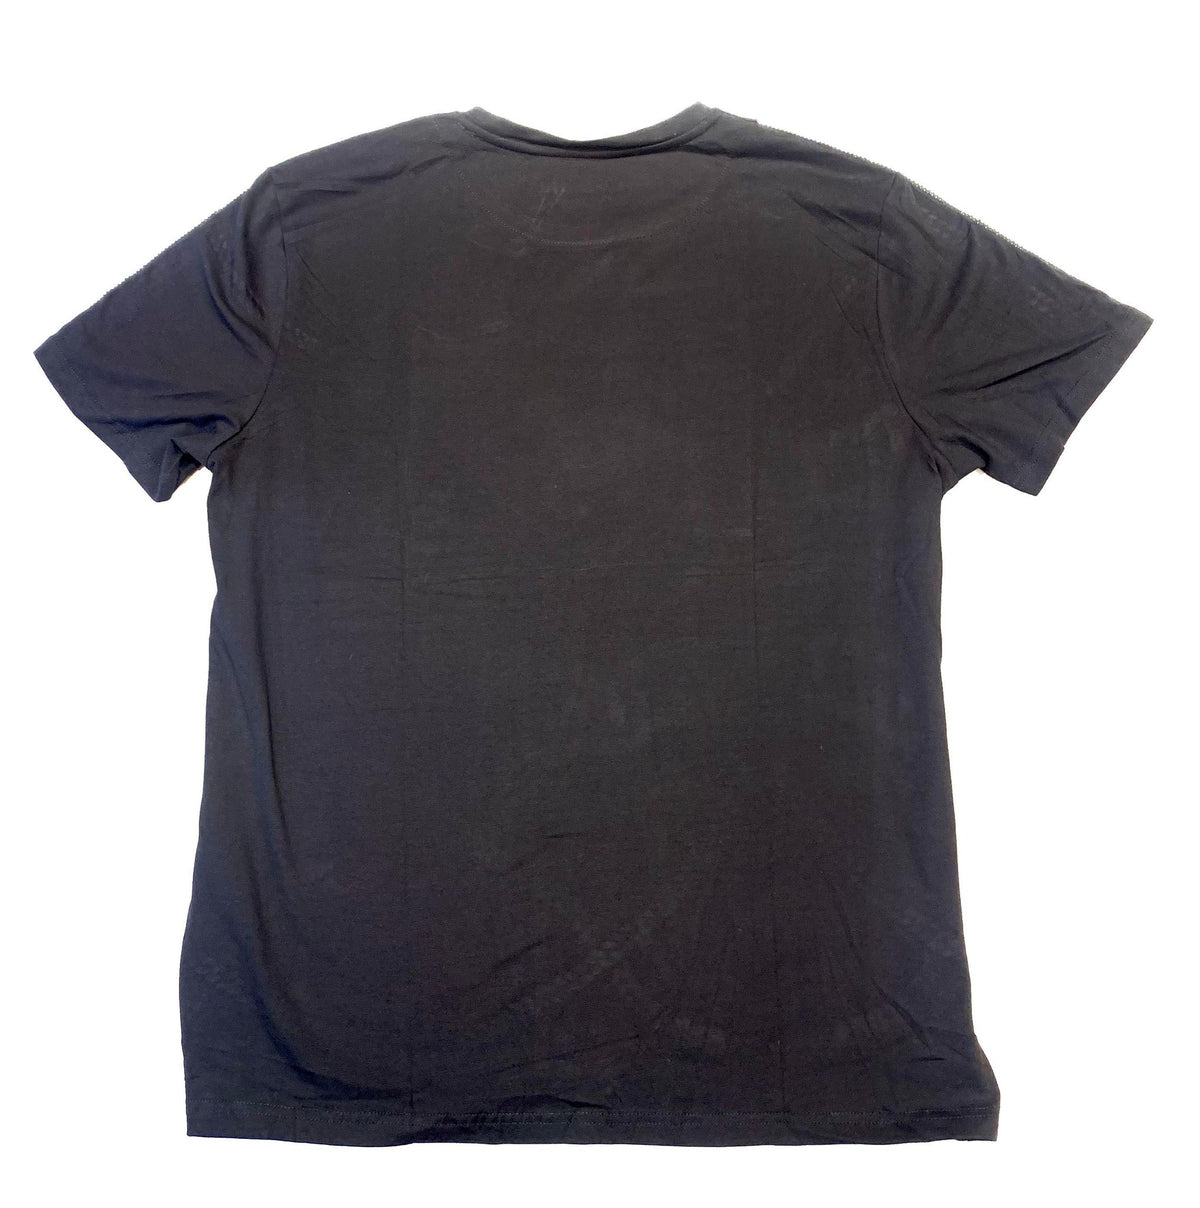 Barabas Men's Black Silver Chain Crewneck Short Sleeve T-Shirt - Dudes Boutique